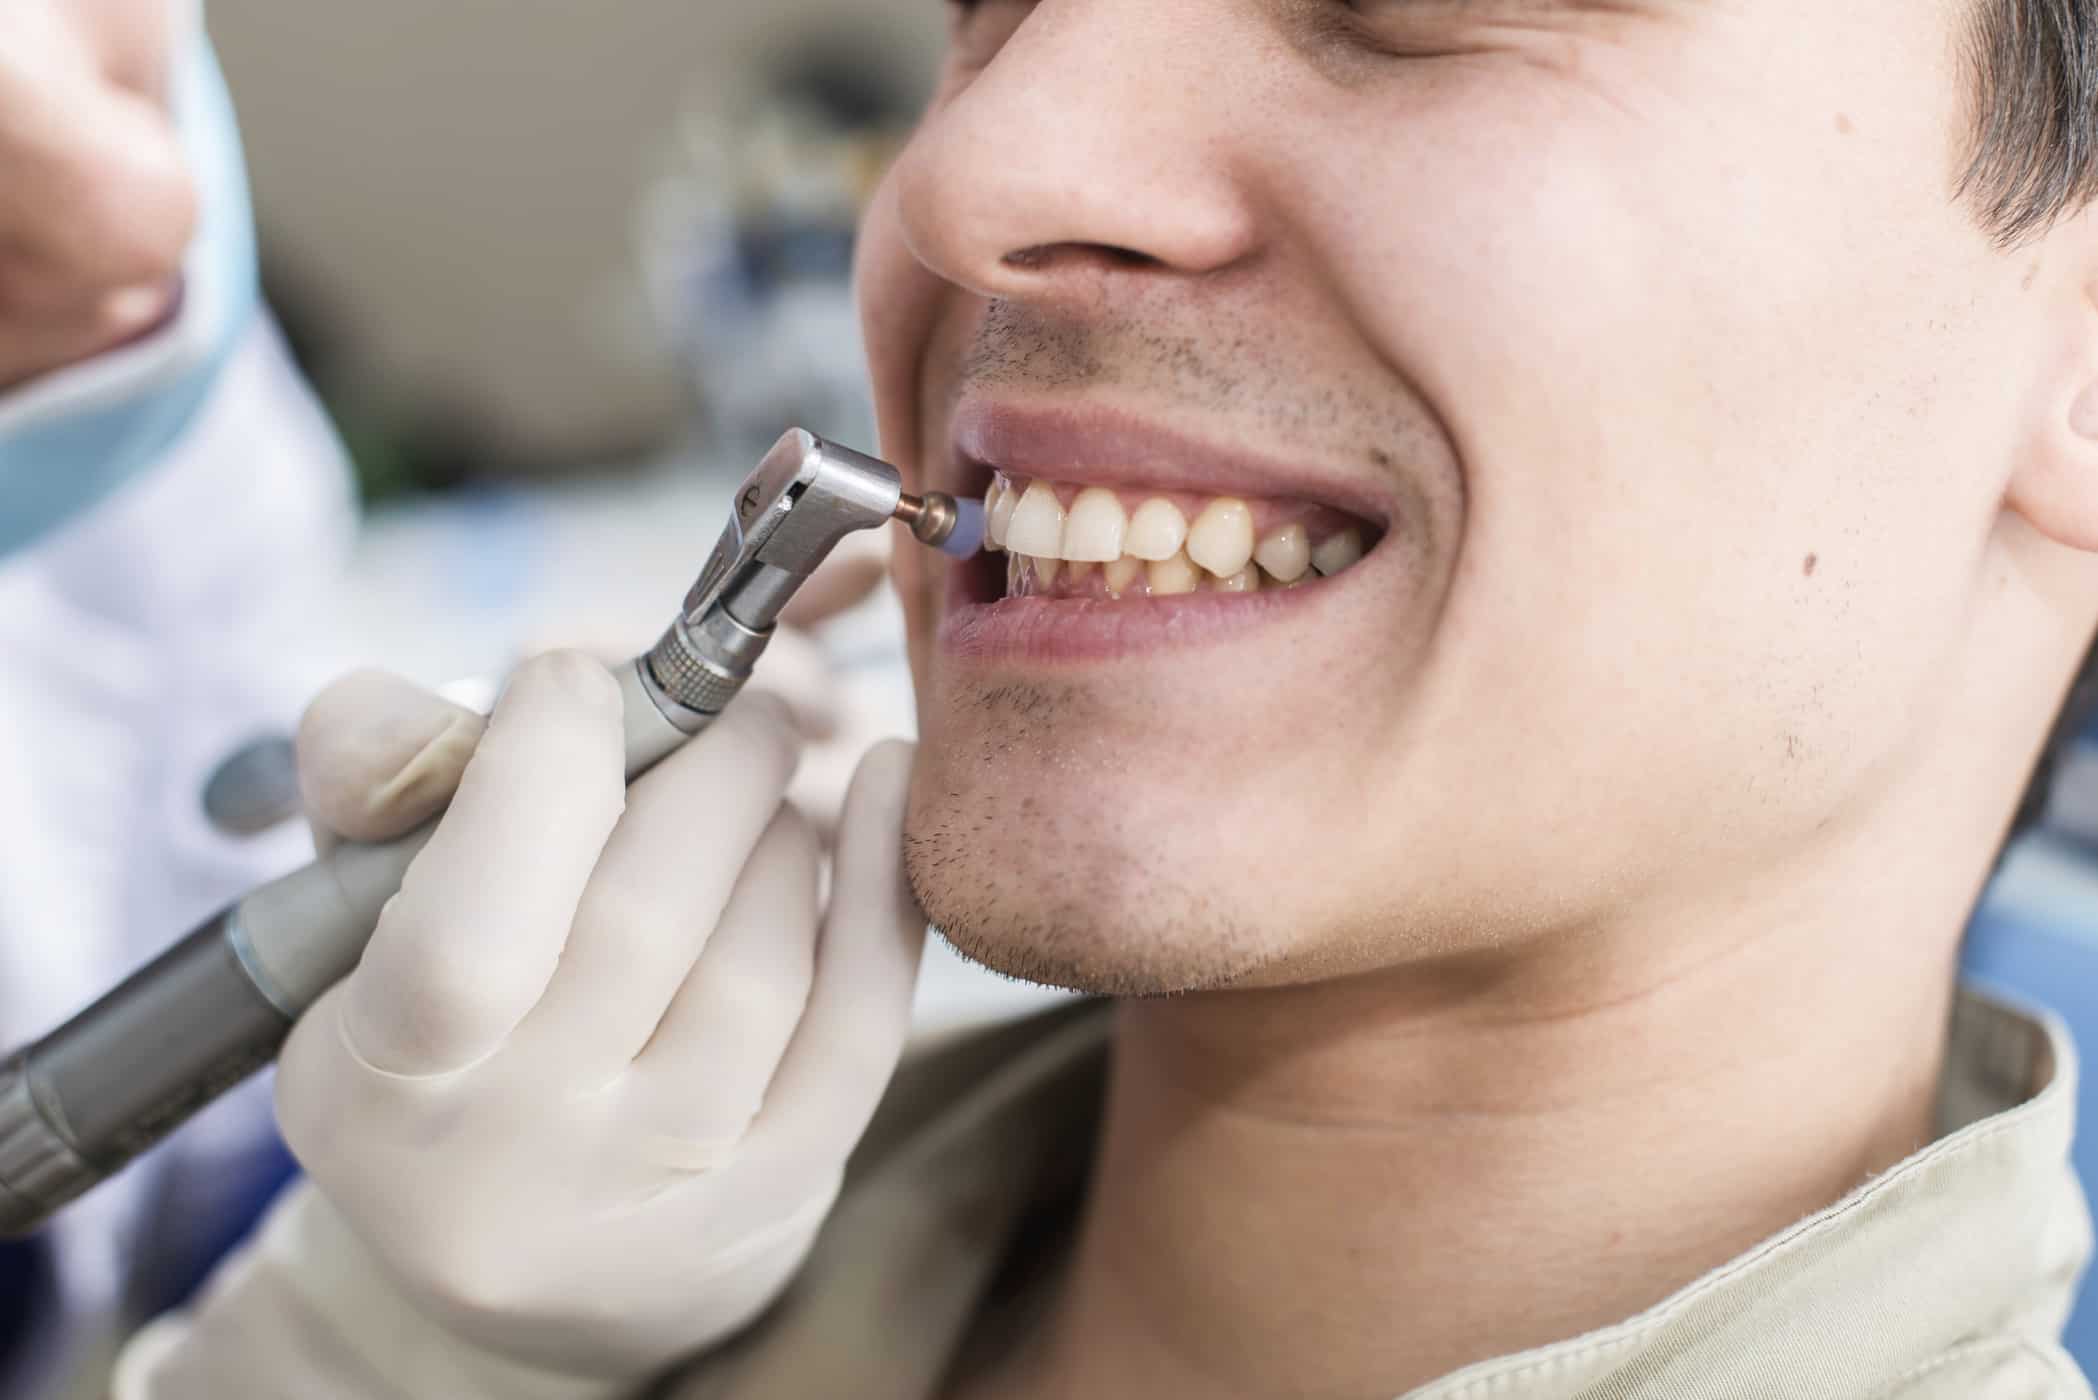 7 начина да изправите зъбите си, които можете да опитате при лекаря